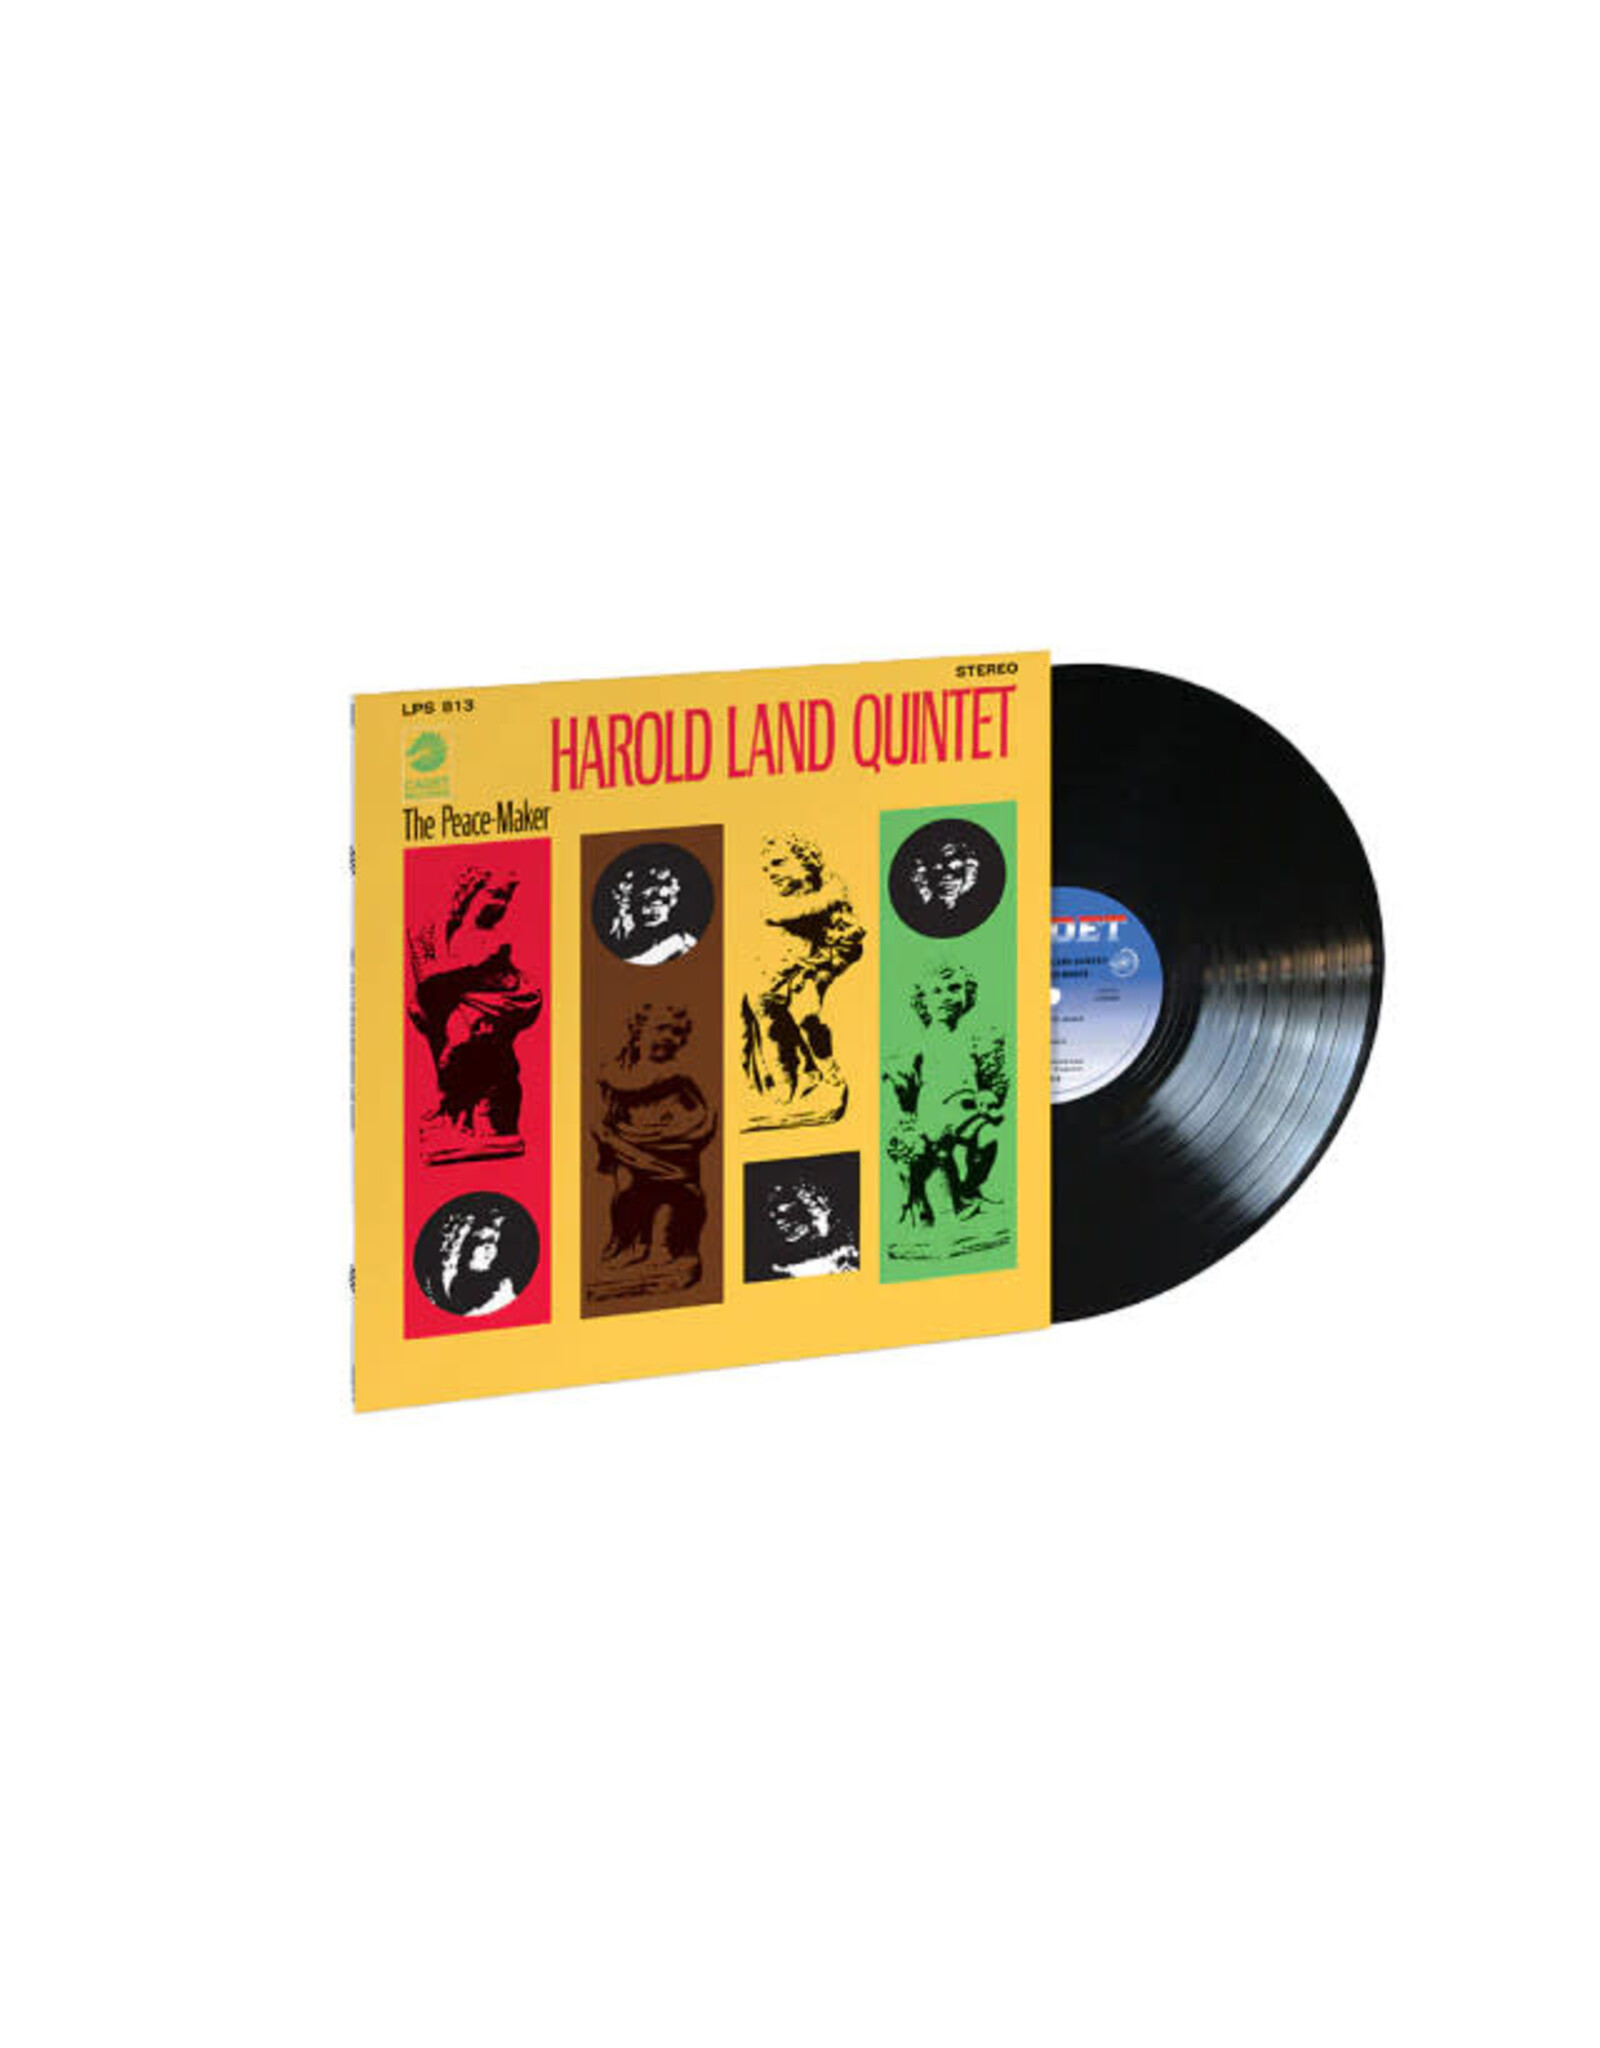 Verve Land, Harold Quintet: The Peace-Maker (Verve By Request) LP